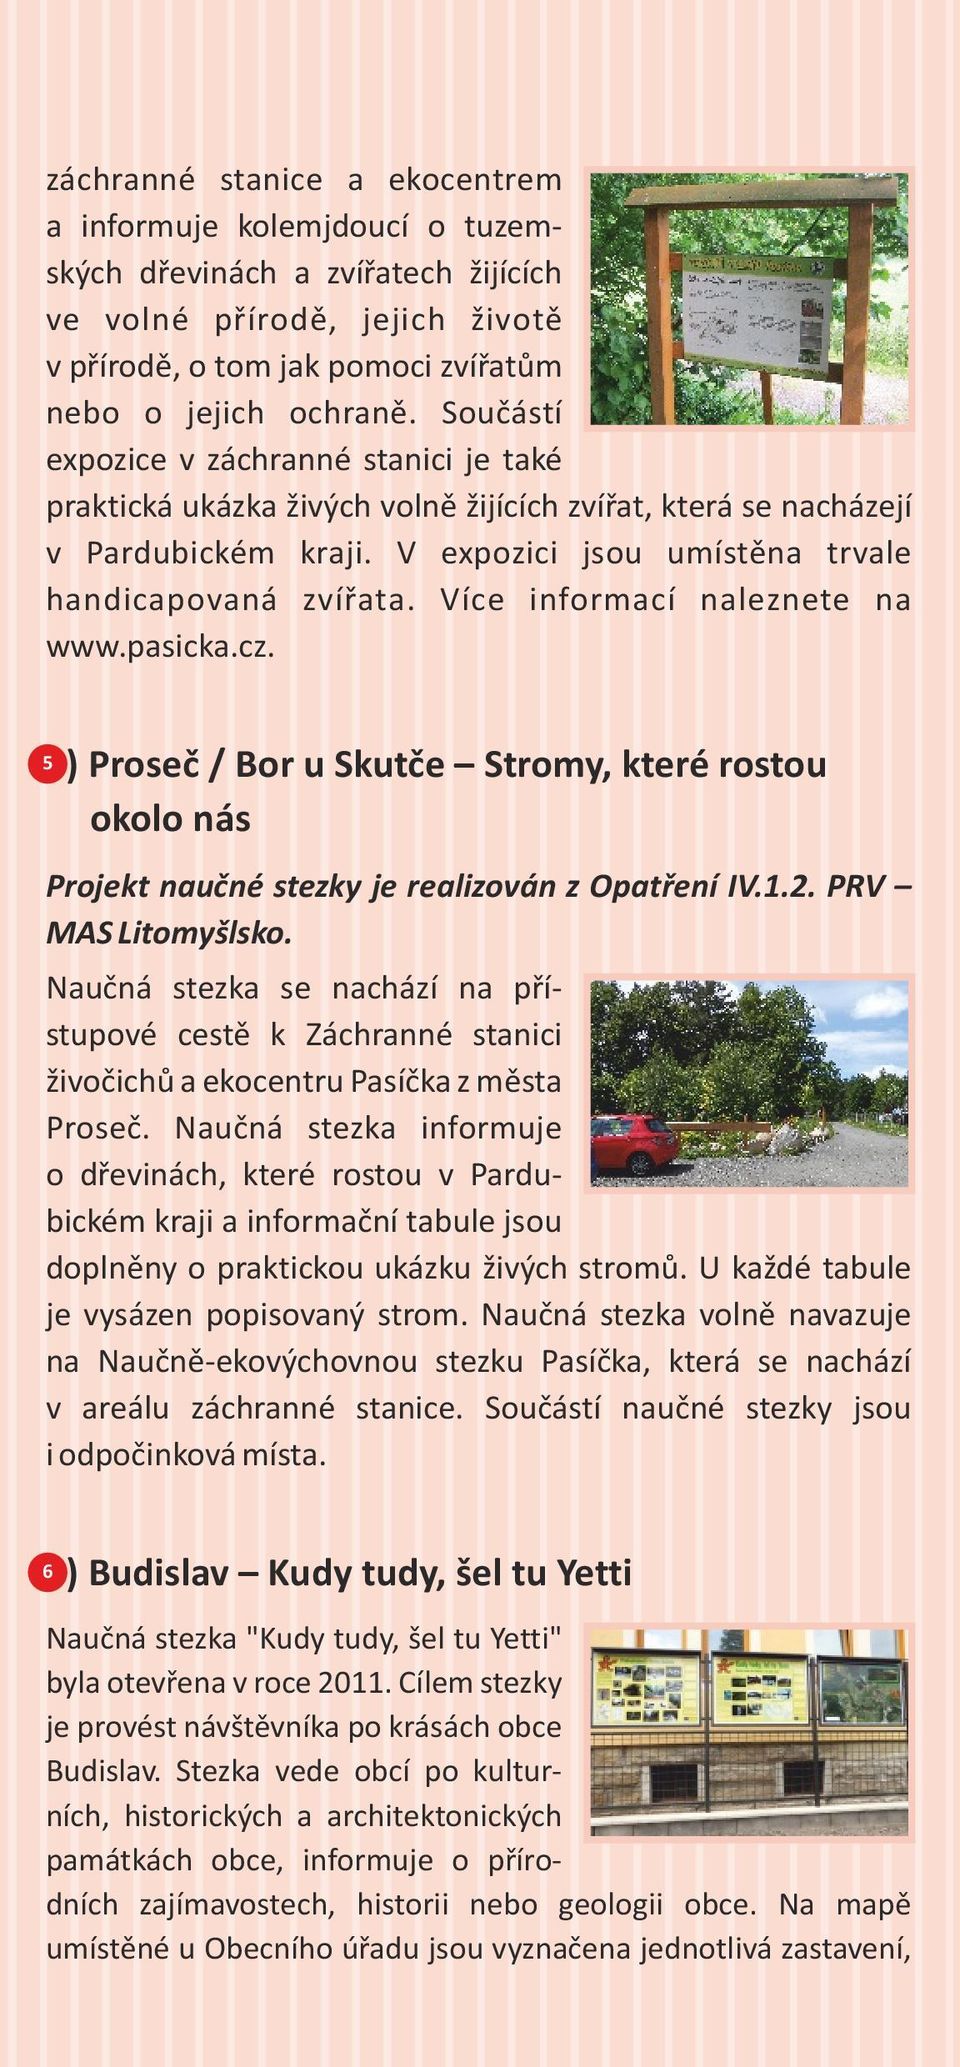 Více informací naleznete na www.pasicka.cz. 55) Proseč / Bor u Skutče Stromy, které rostou okolo nás Projekt naučné stezky je realizován z Opatření IV.1.2. PRV MAS Litomyšlsko.